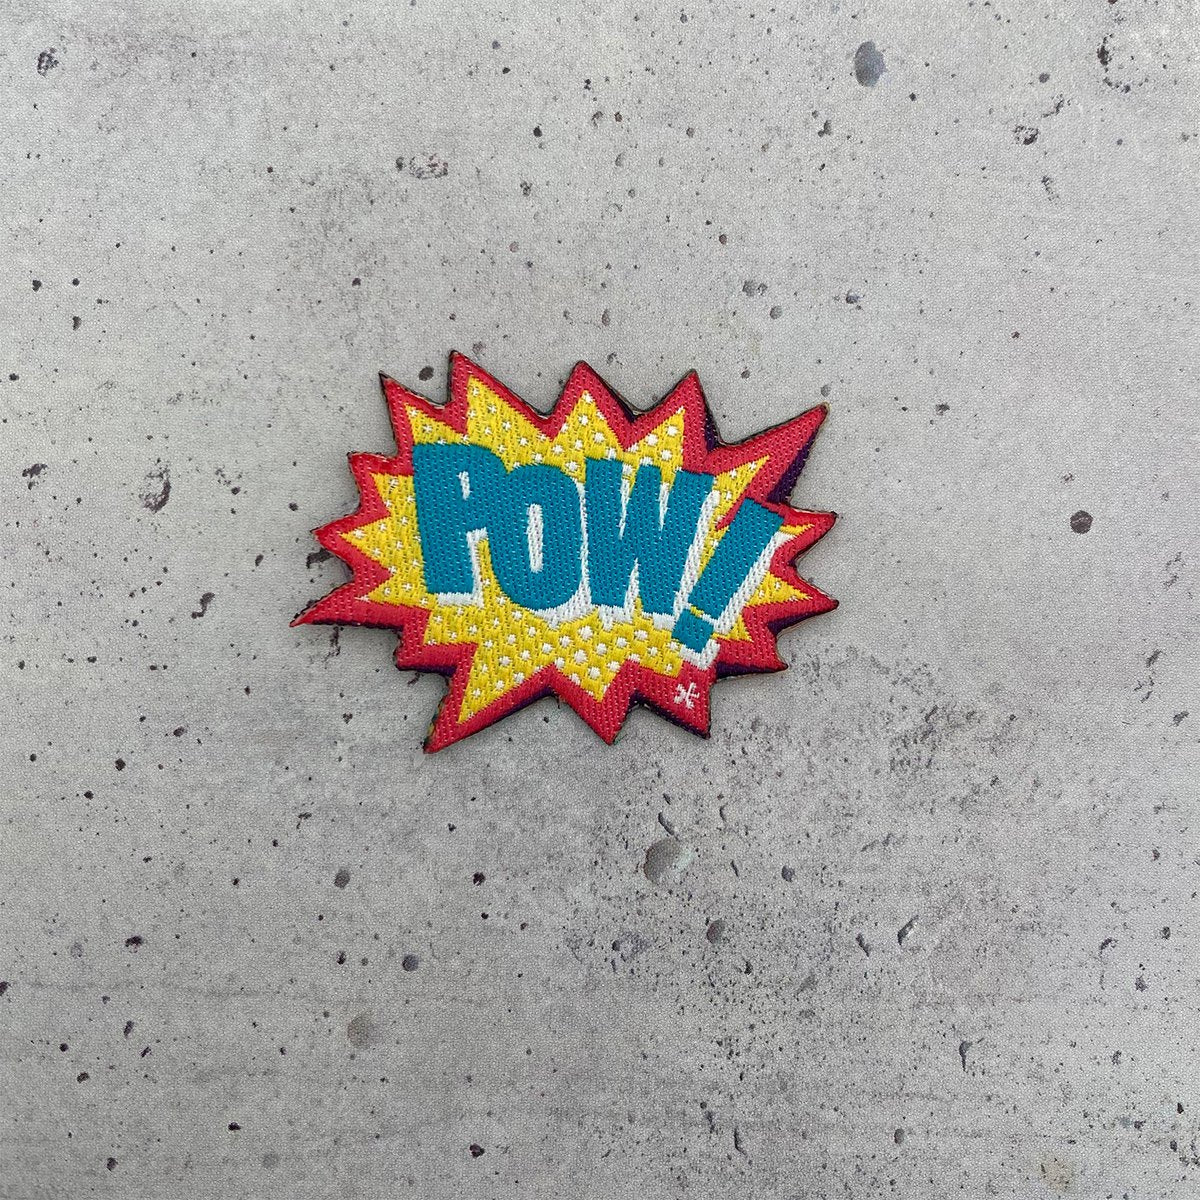 Sticker-Patch "POW"